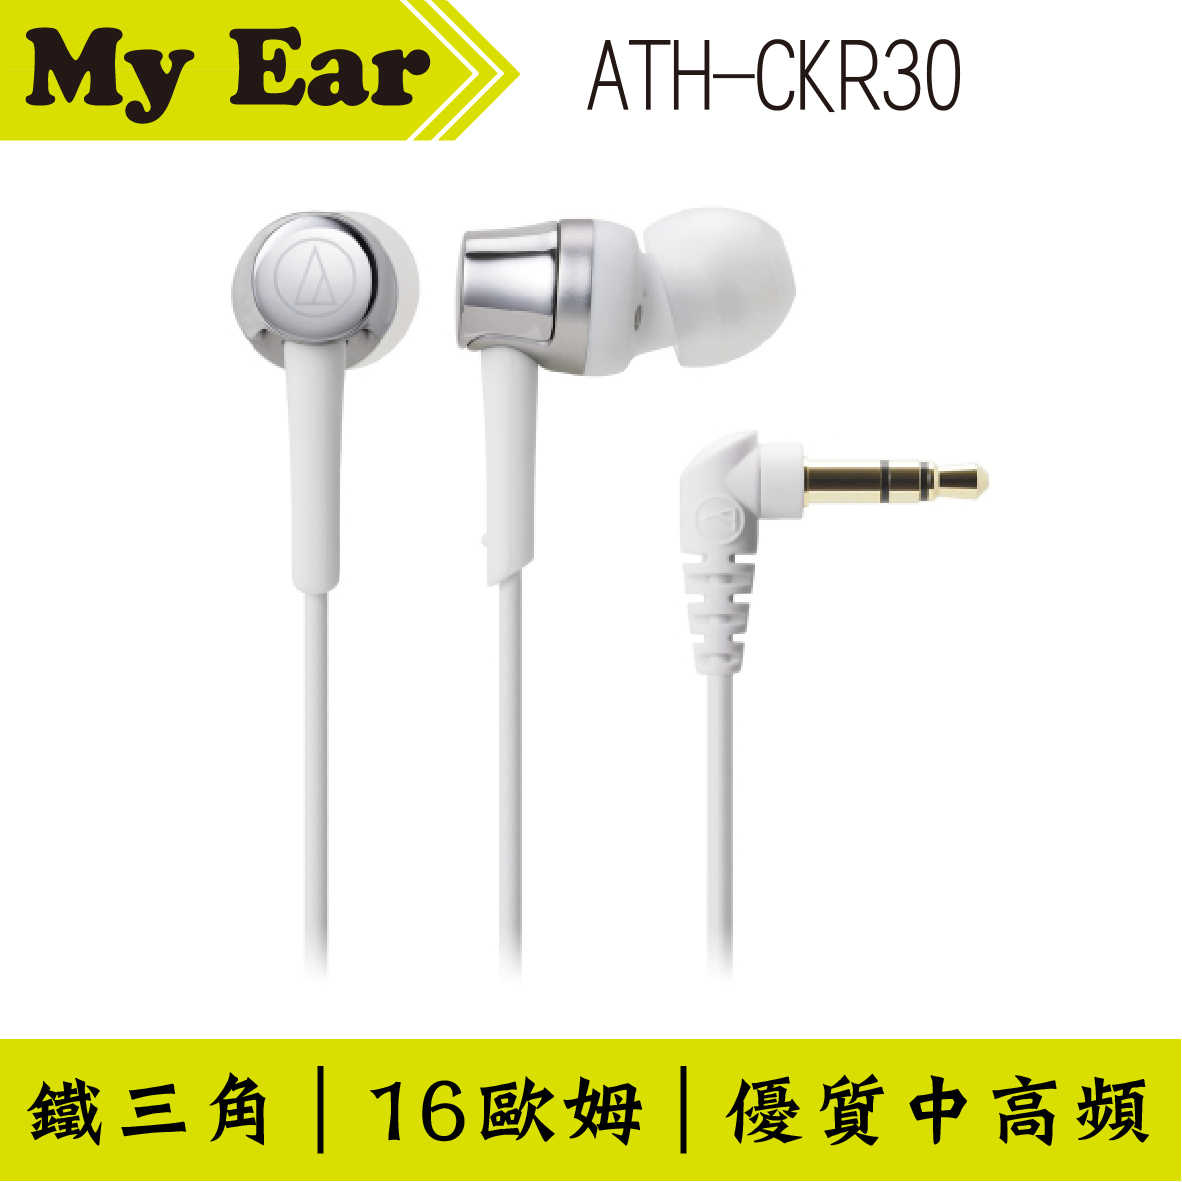 鐵三角 ATH-CKR30 銀色 耳道式 耳機| My Ear 耳機專門店